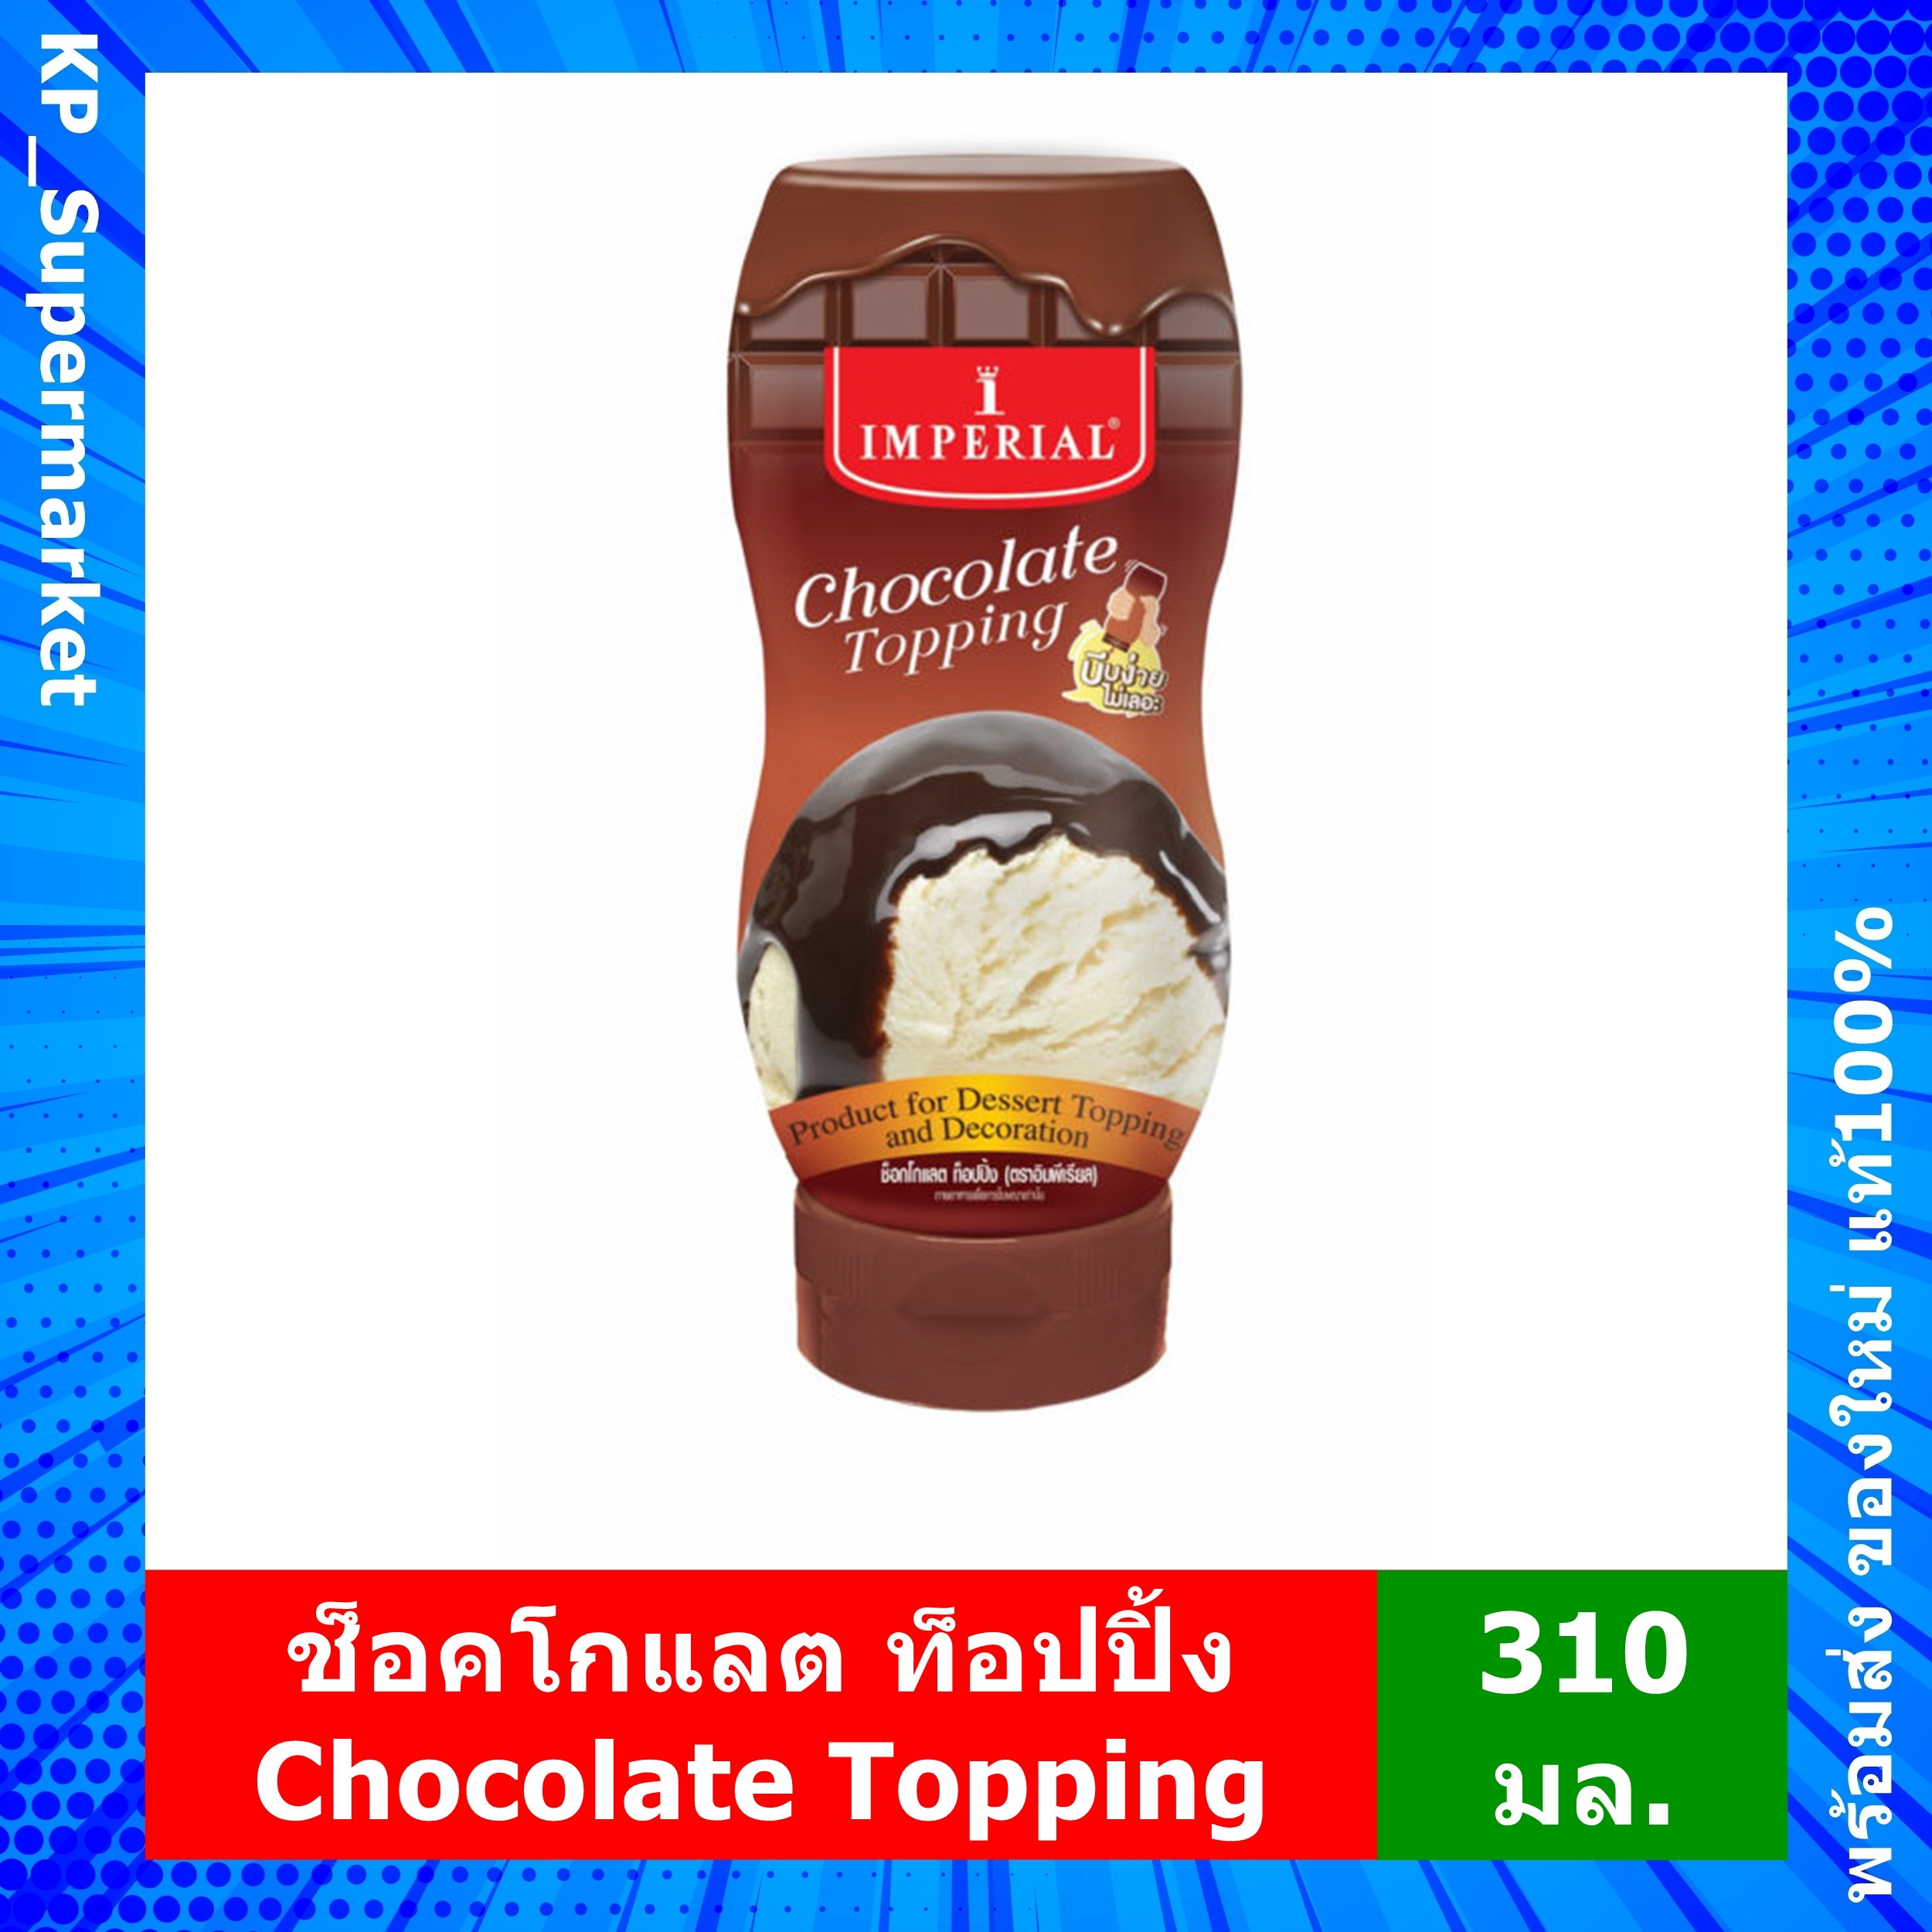 ช็อคโกแลต ท็อปปิ้ง Chocolate Topping ซอส ช็อกโกแลต Imperial อิมพีเรียล (310 มล.)